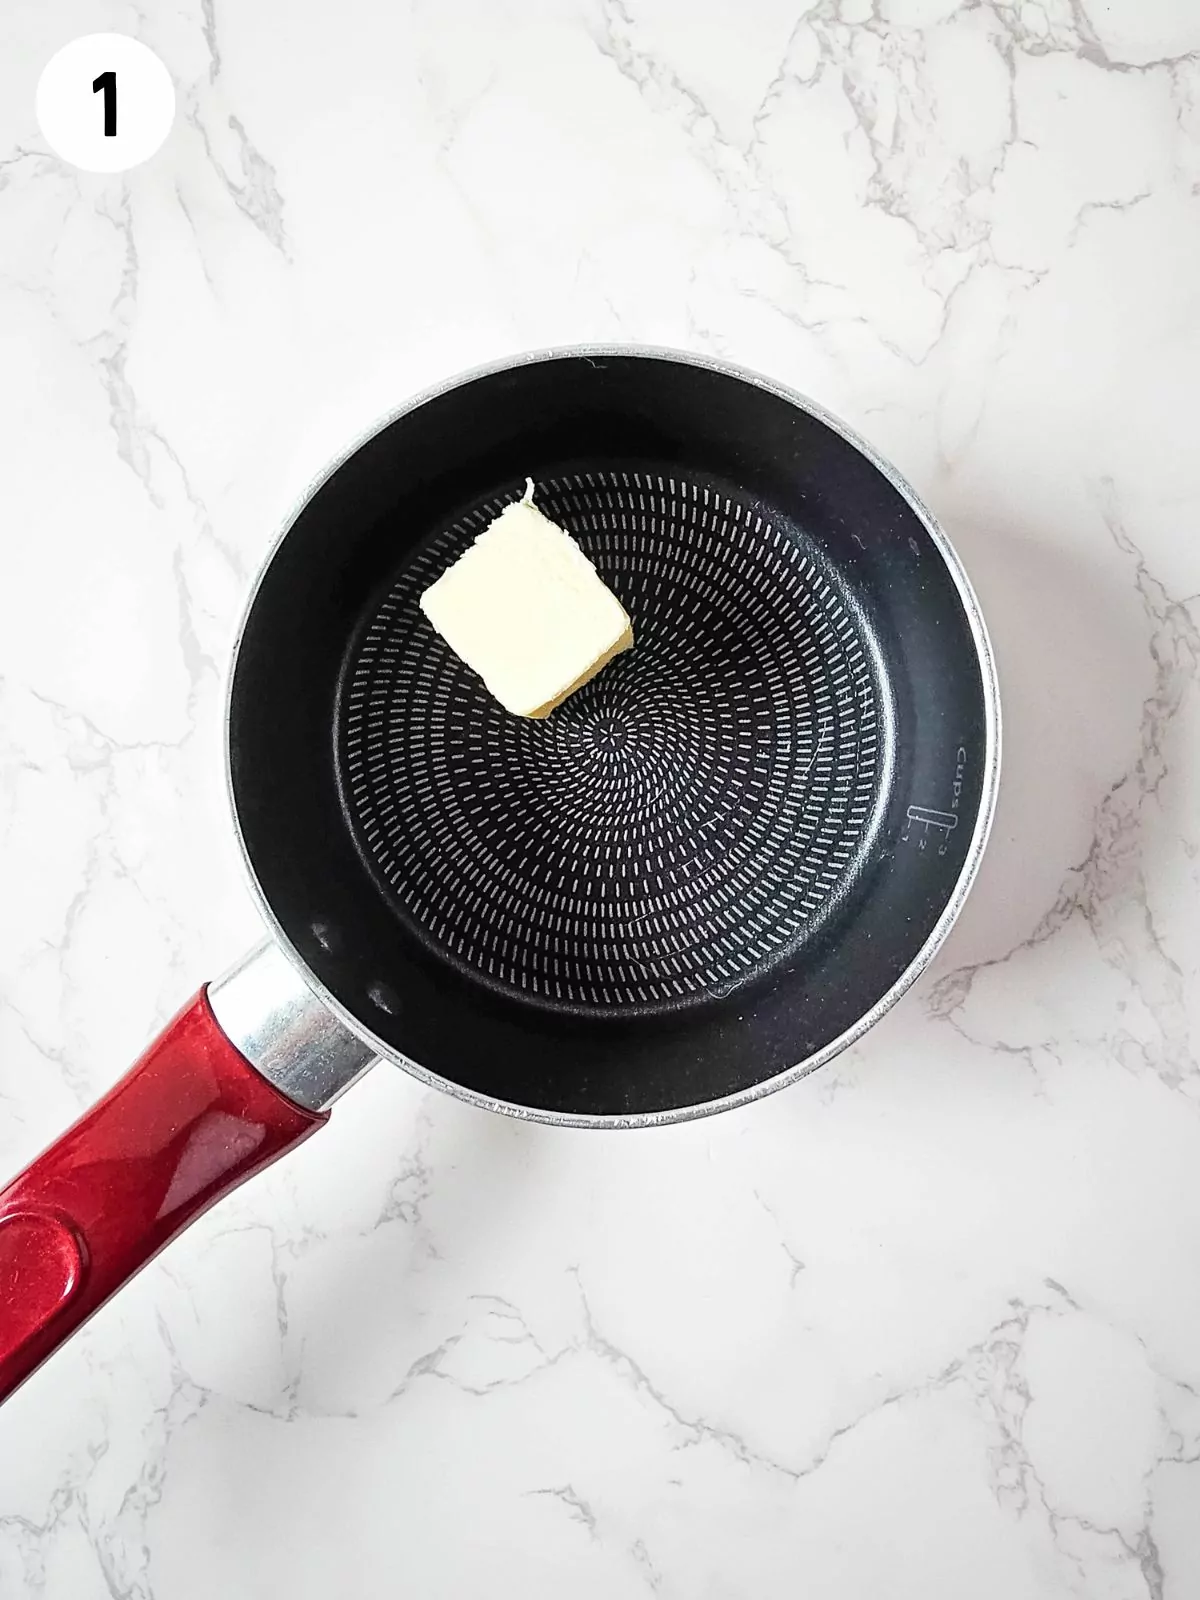 melt butter in saucepan.